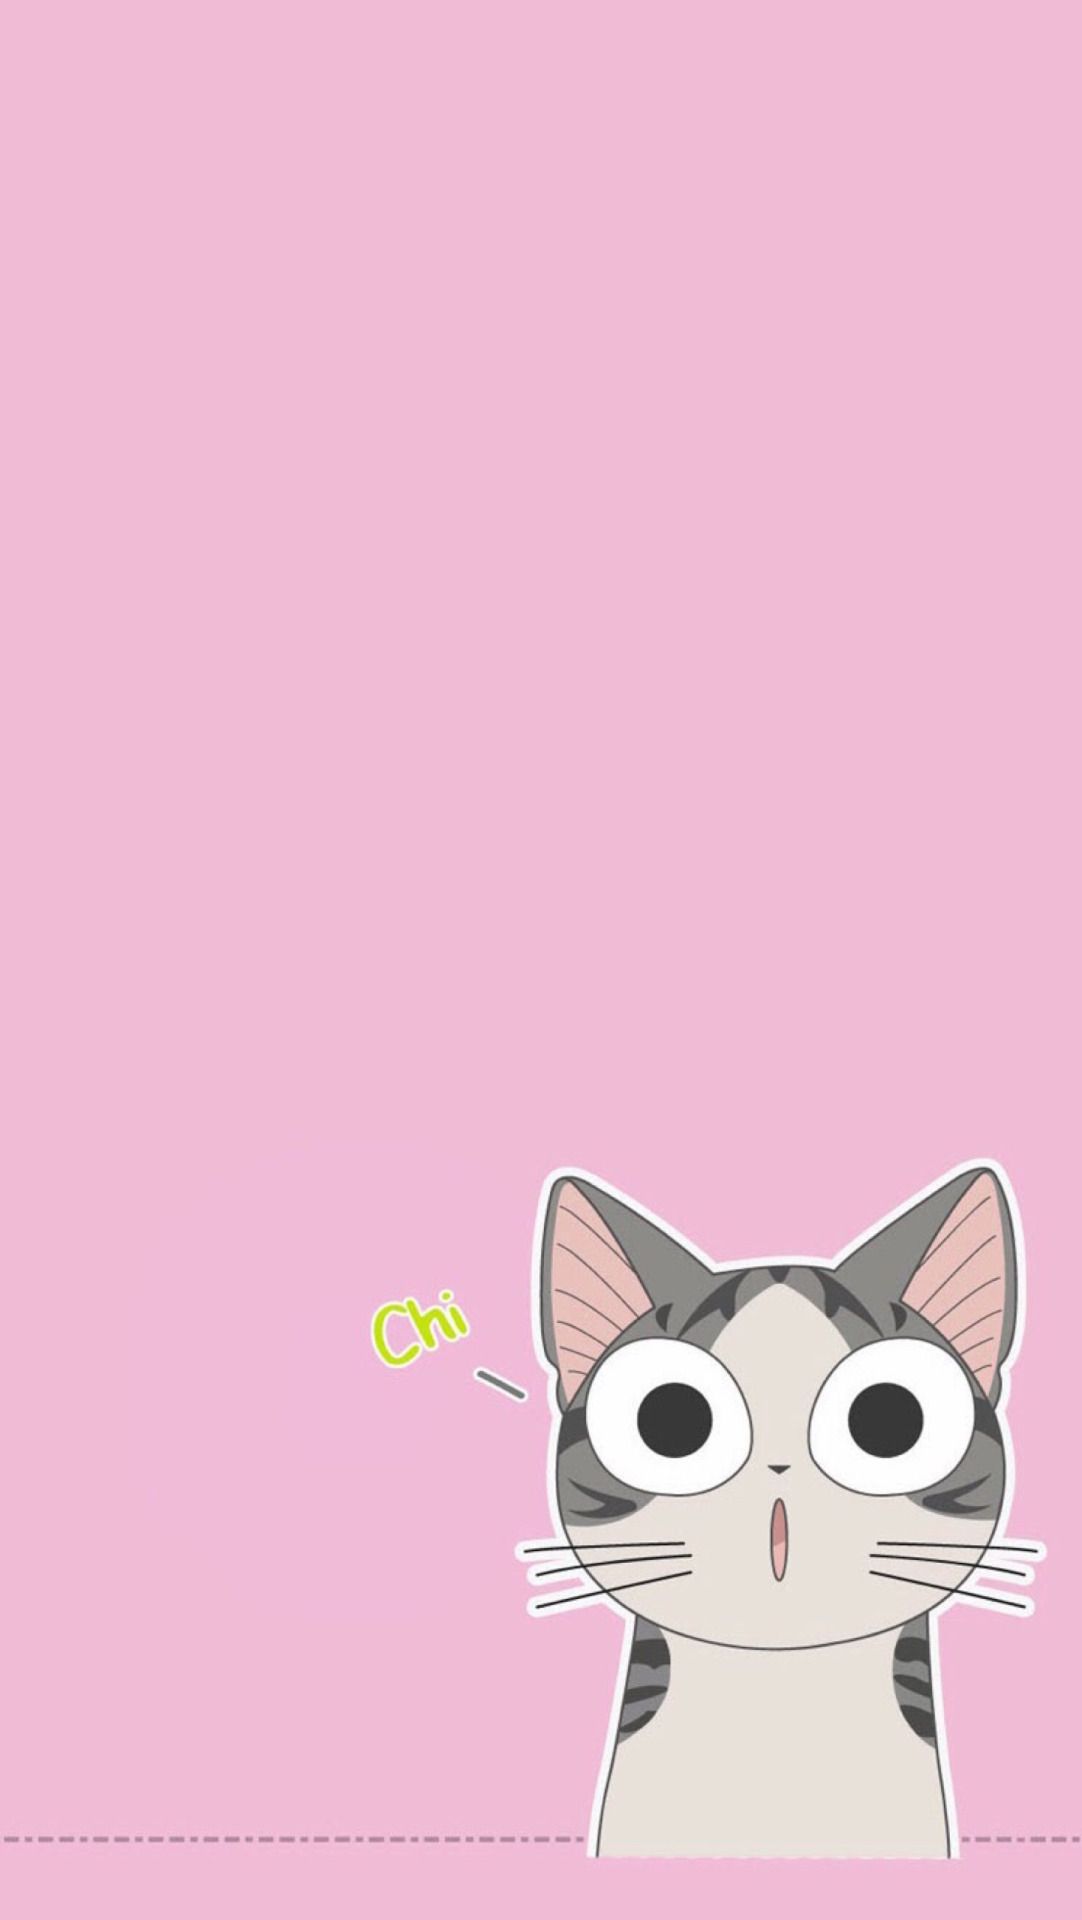 Pink Cat Images - Free Download on Freepik